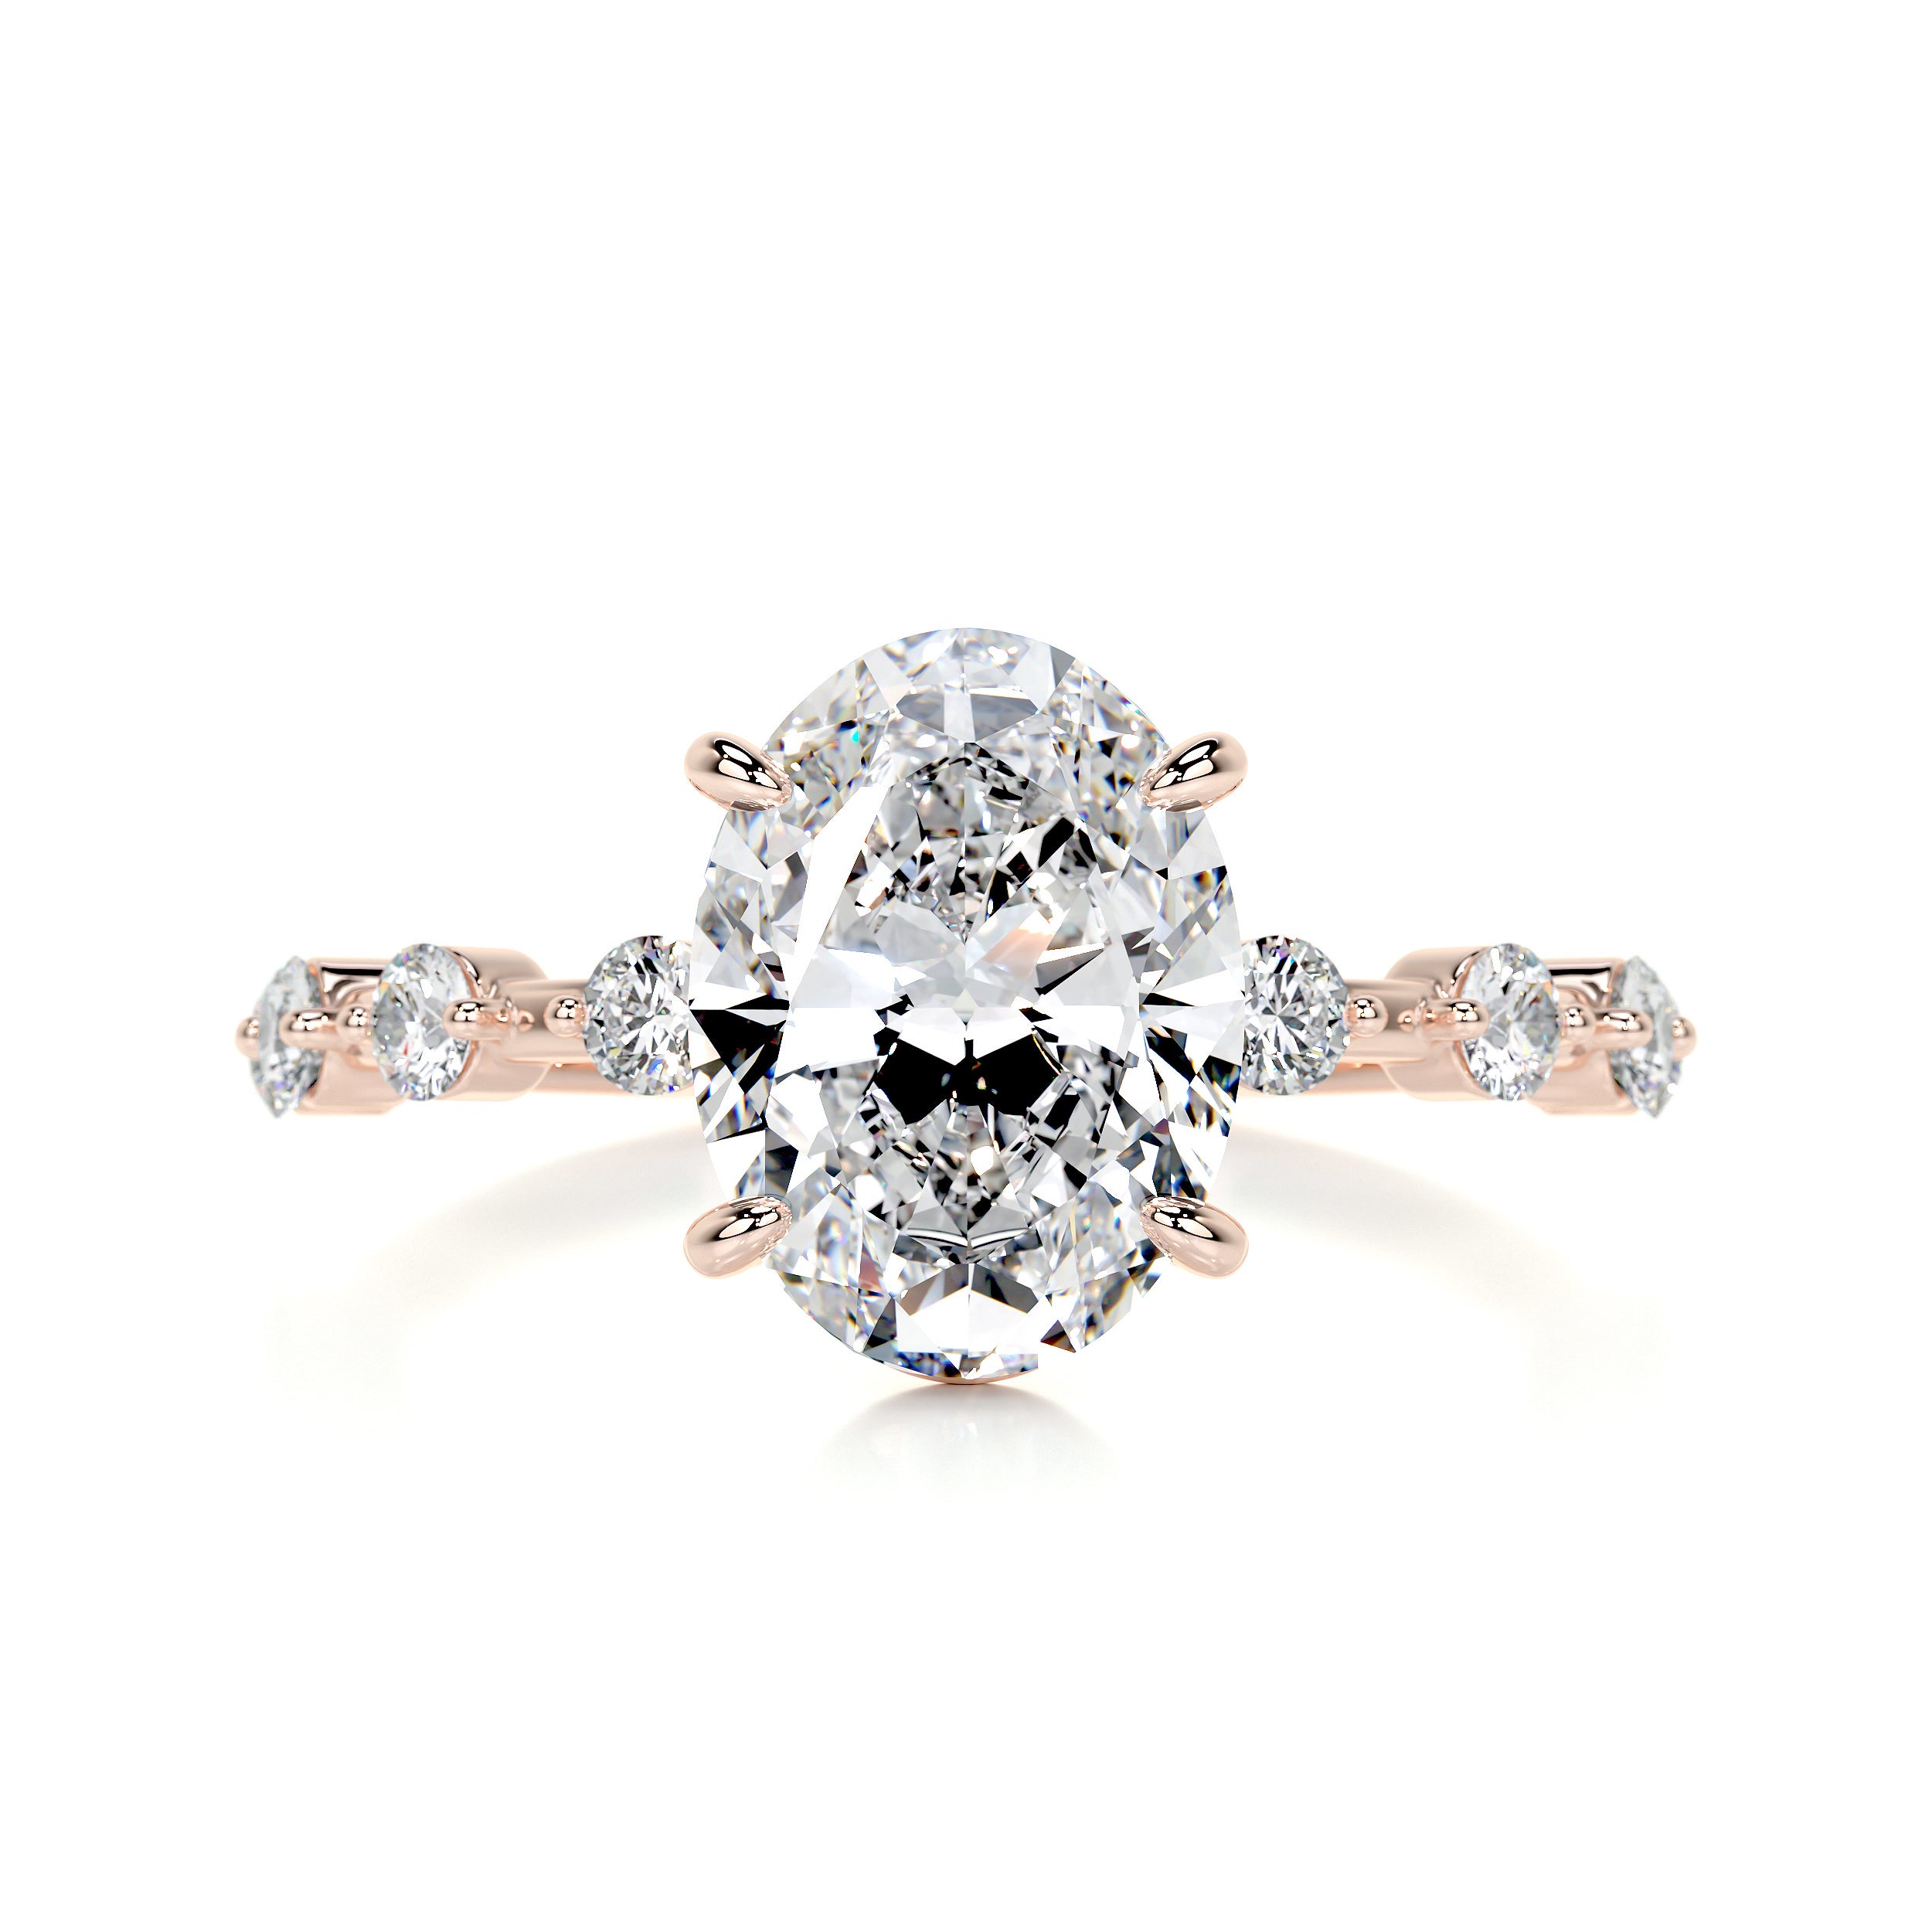 Bell Diamond Engagement Ring -14K Rose Gold